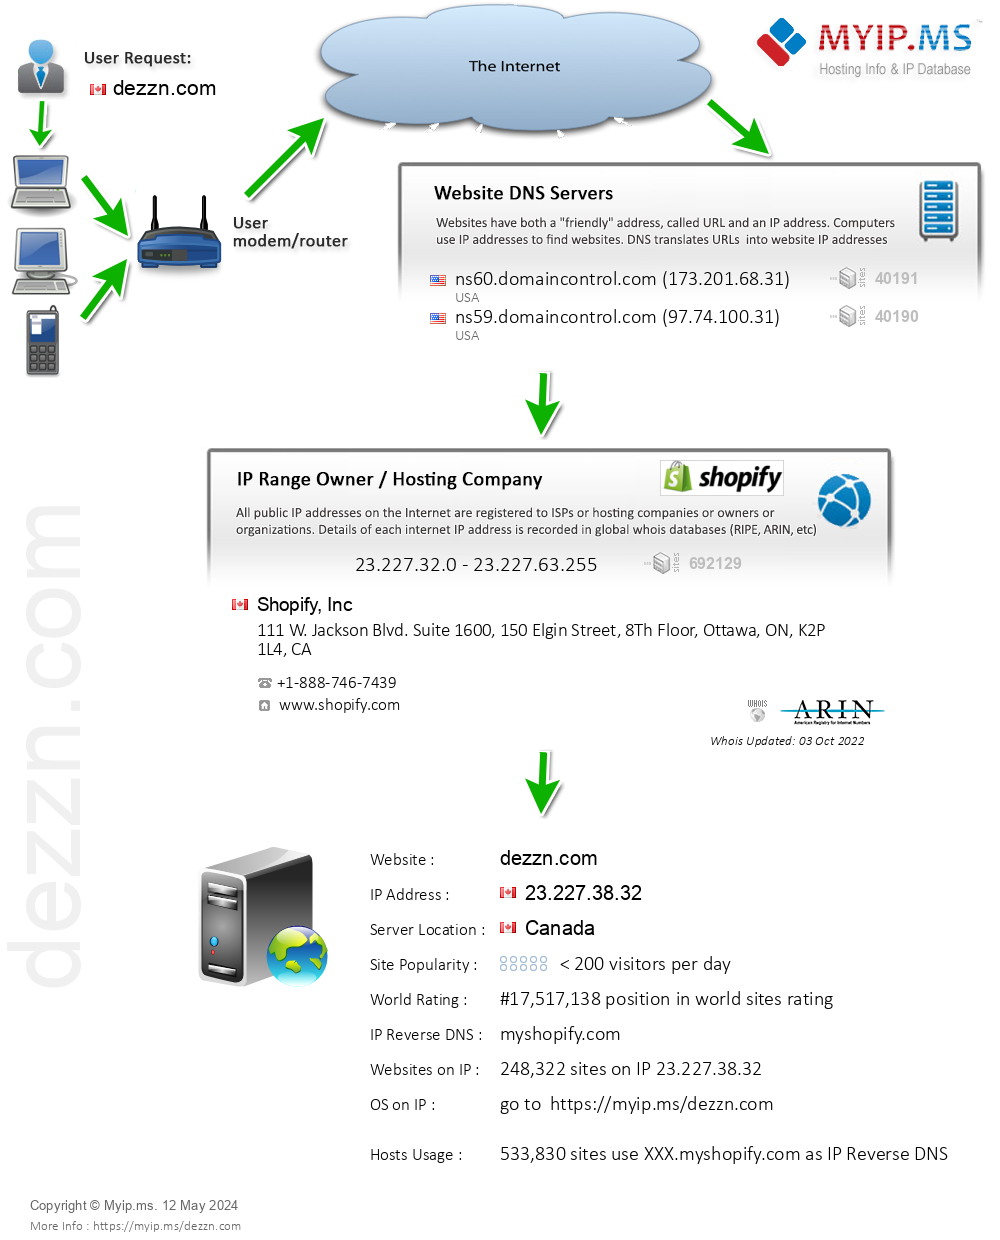 Dezzn.com - Website Hosting Visual IP Diagram